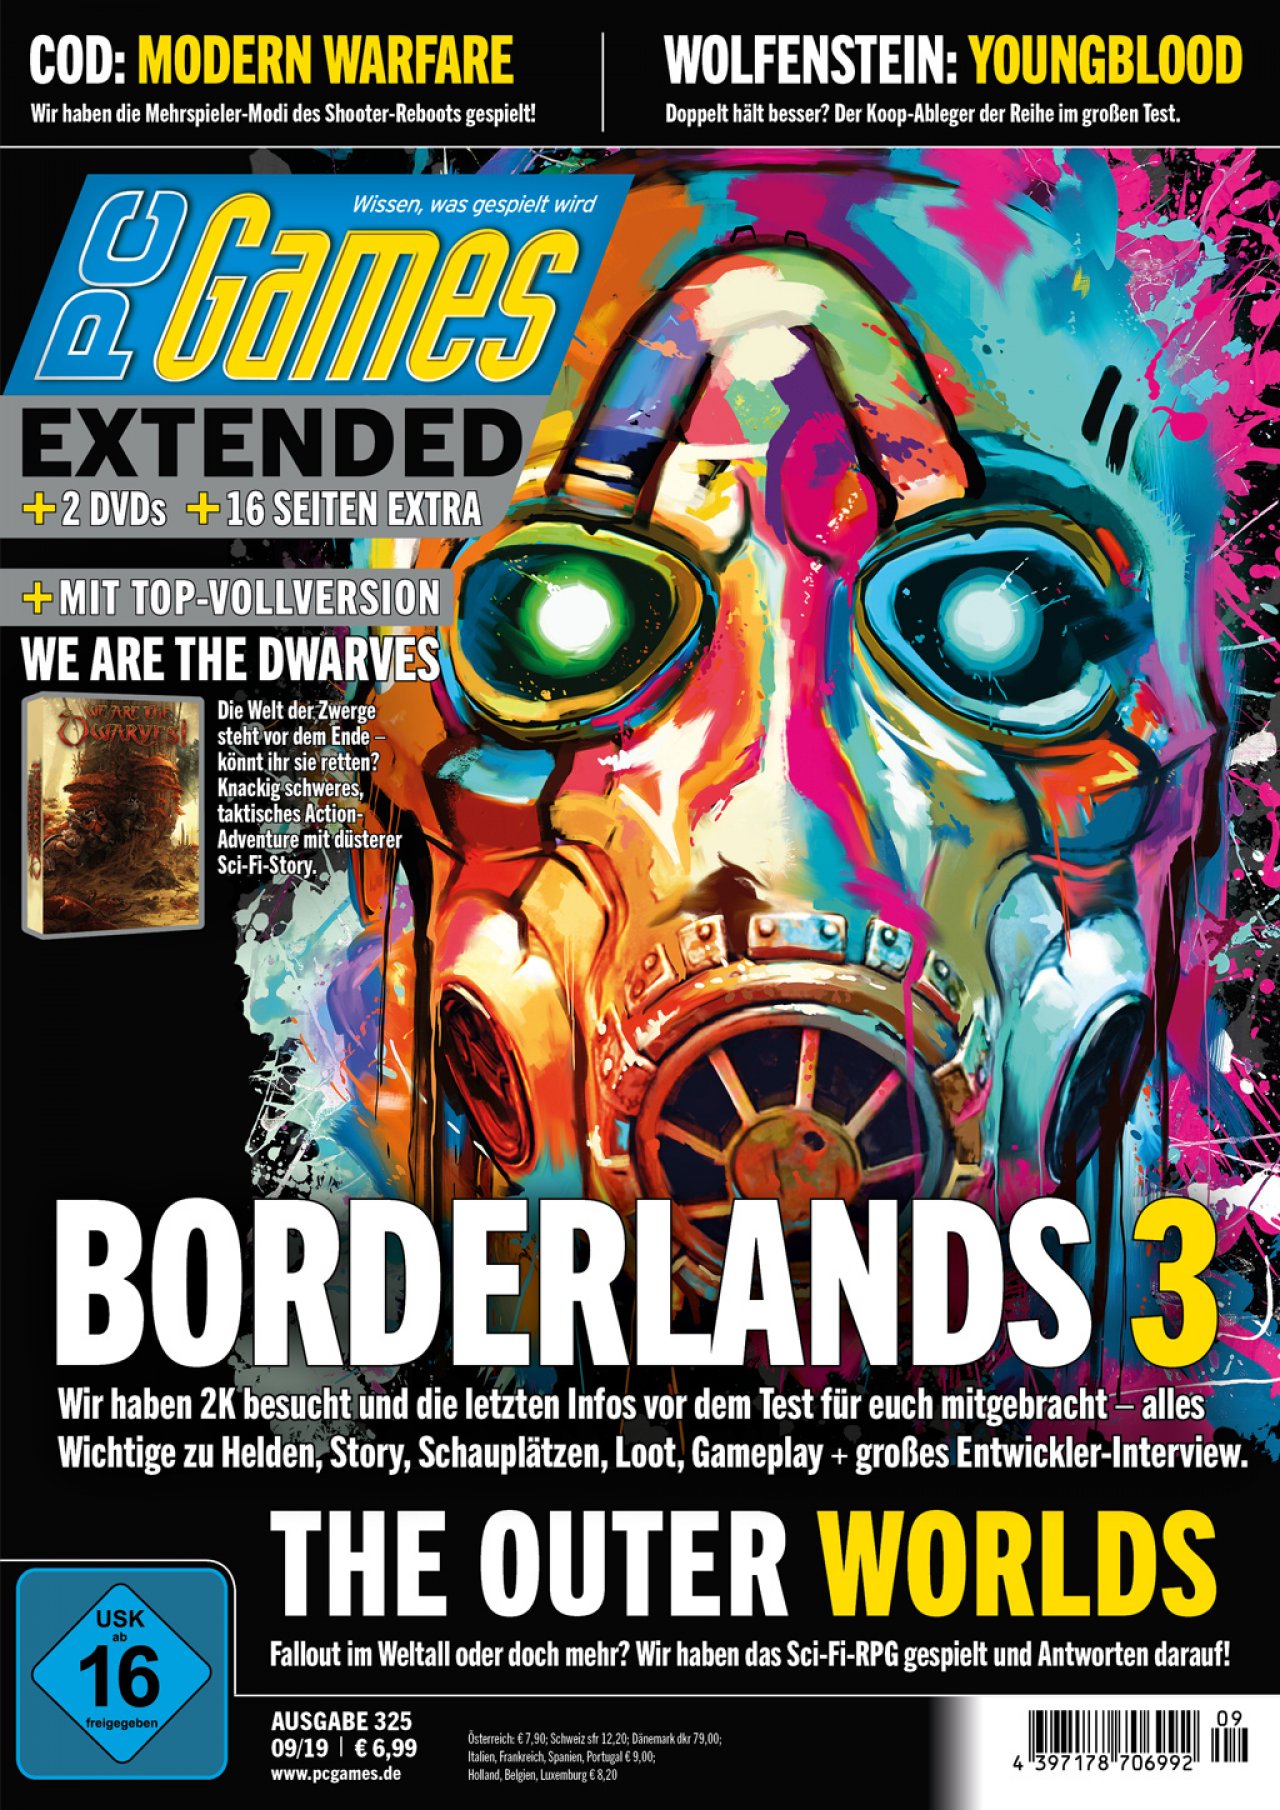 Borderlands gifs videospiele bilder üppig